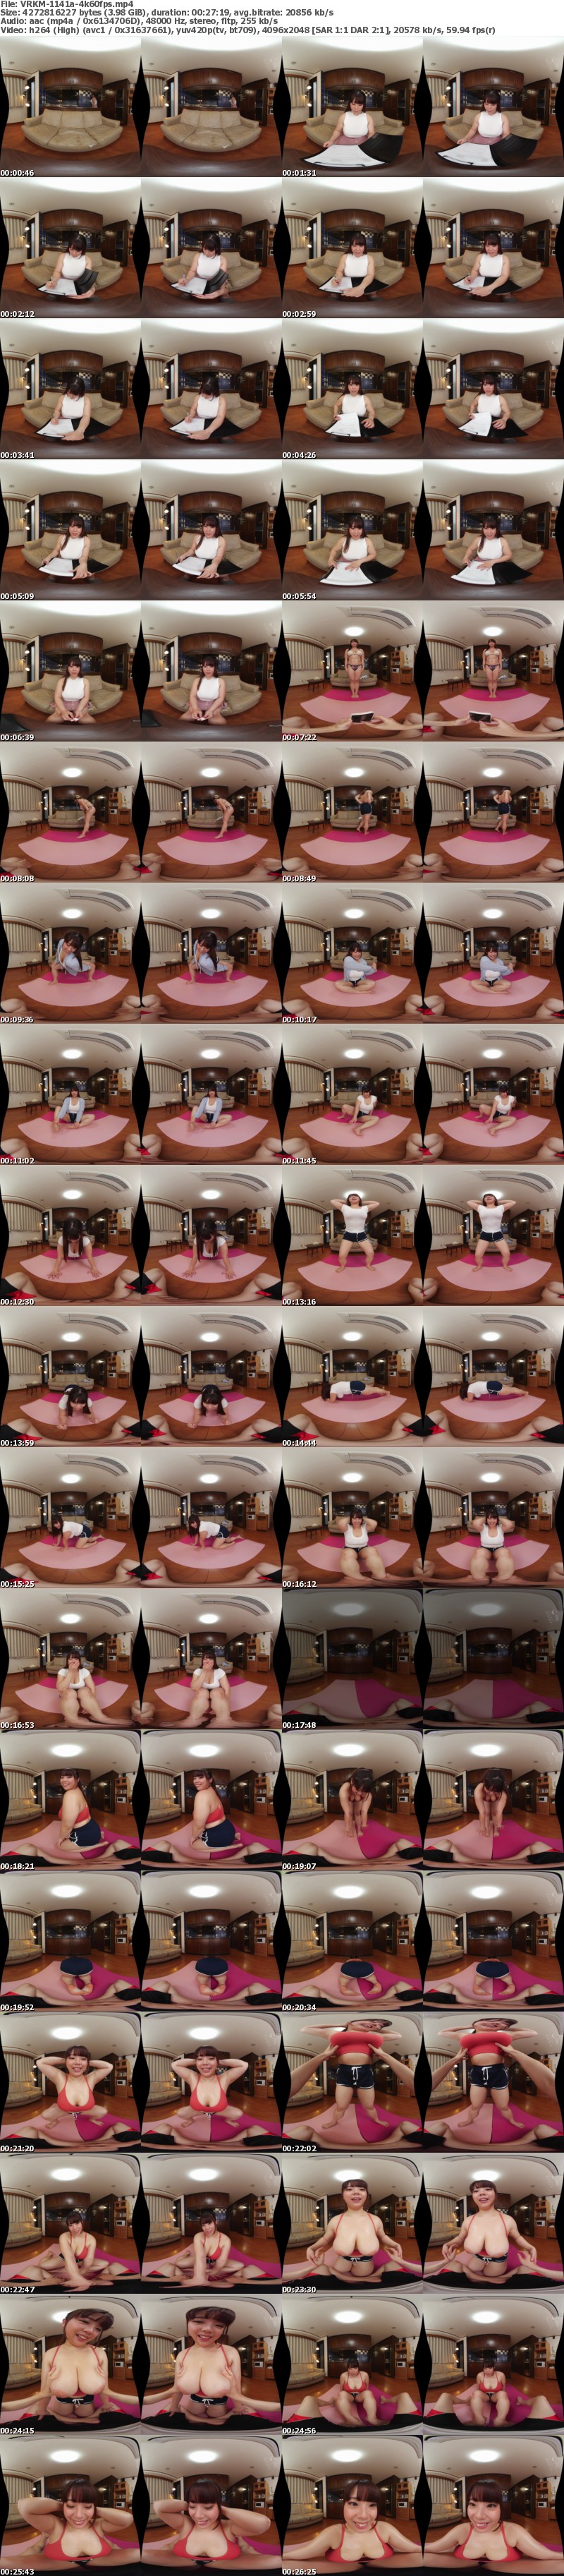 [VR] VRKM-1141 【VR】ぶりぶりボディの颯花さんがボクに欲情下品なJカップ乳房と100cm級デカ尻で圧迫SEXダイエット 南畑颯花